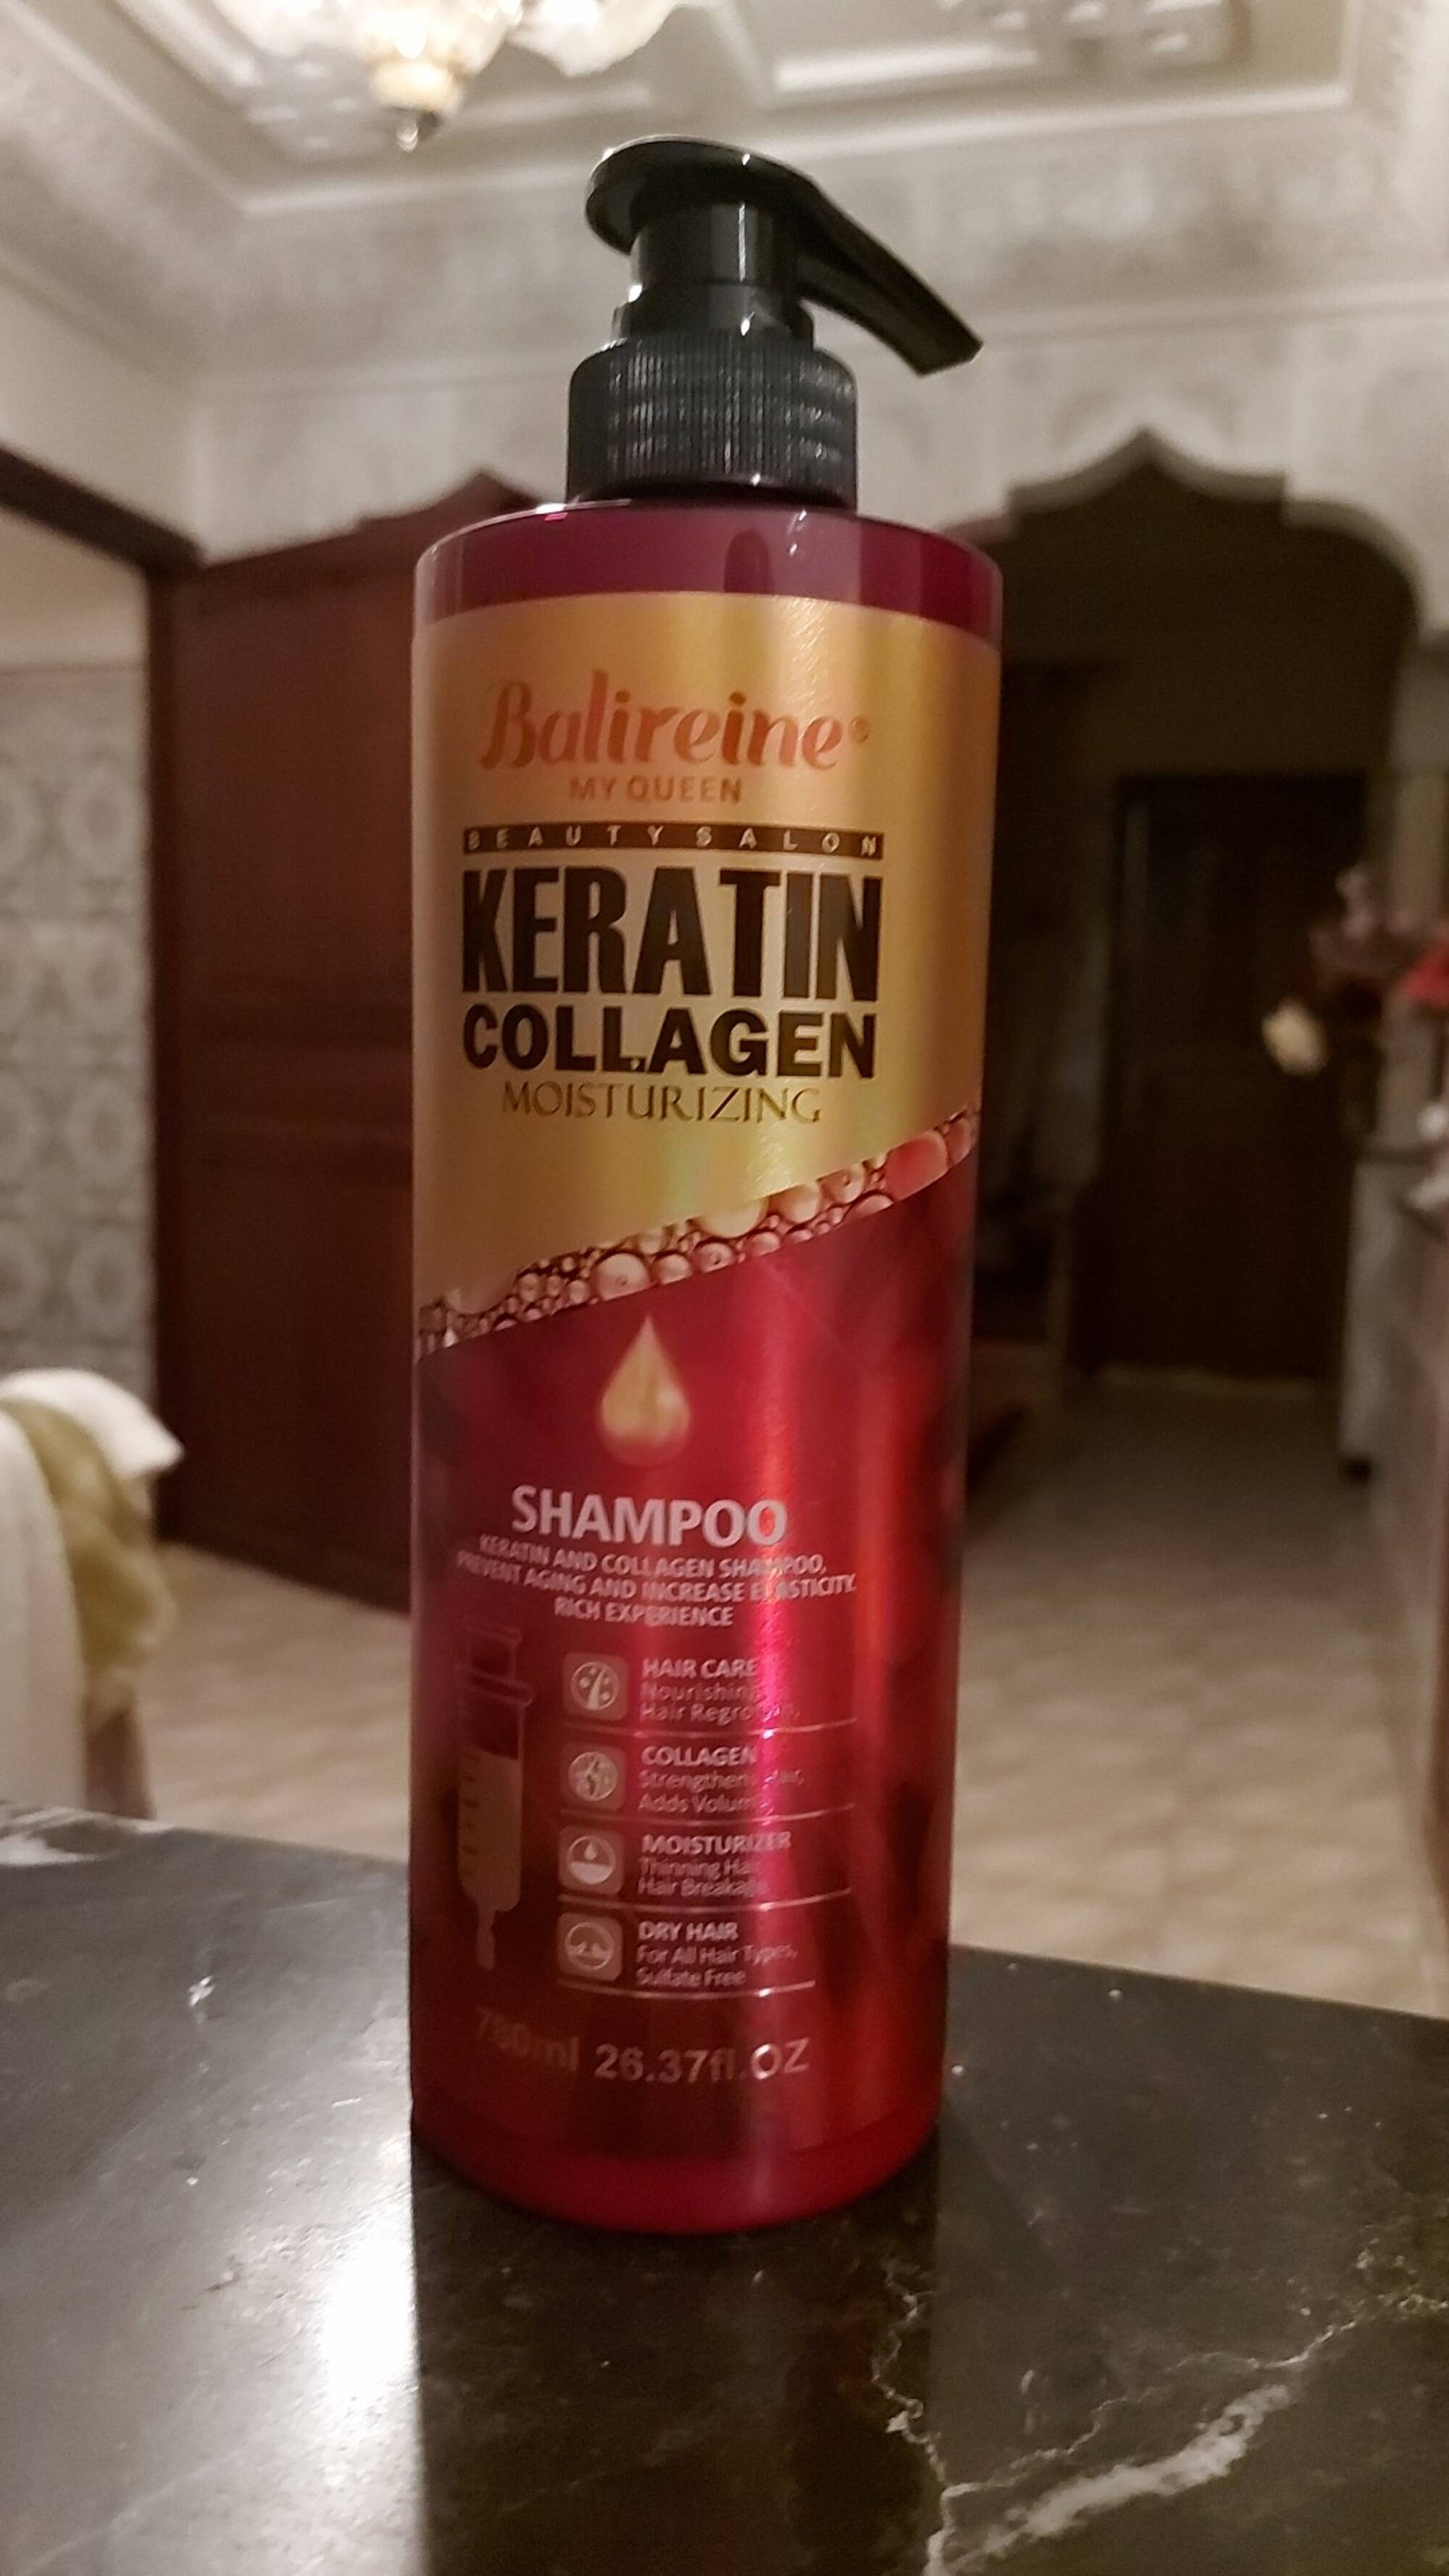 BALIREINE MY QUEEN - Keratin collagen moisturizing - Shampoo